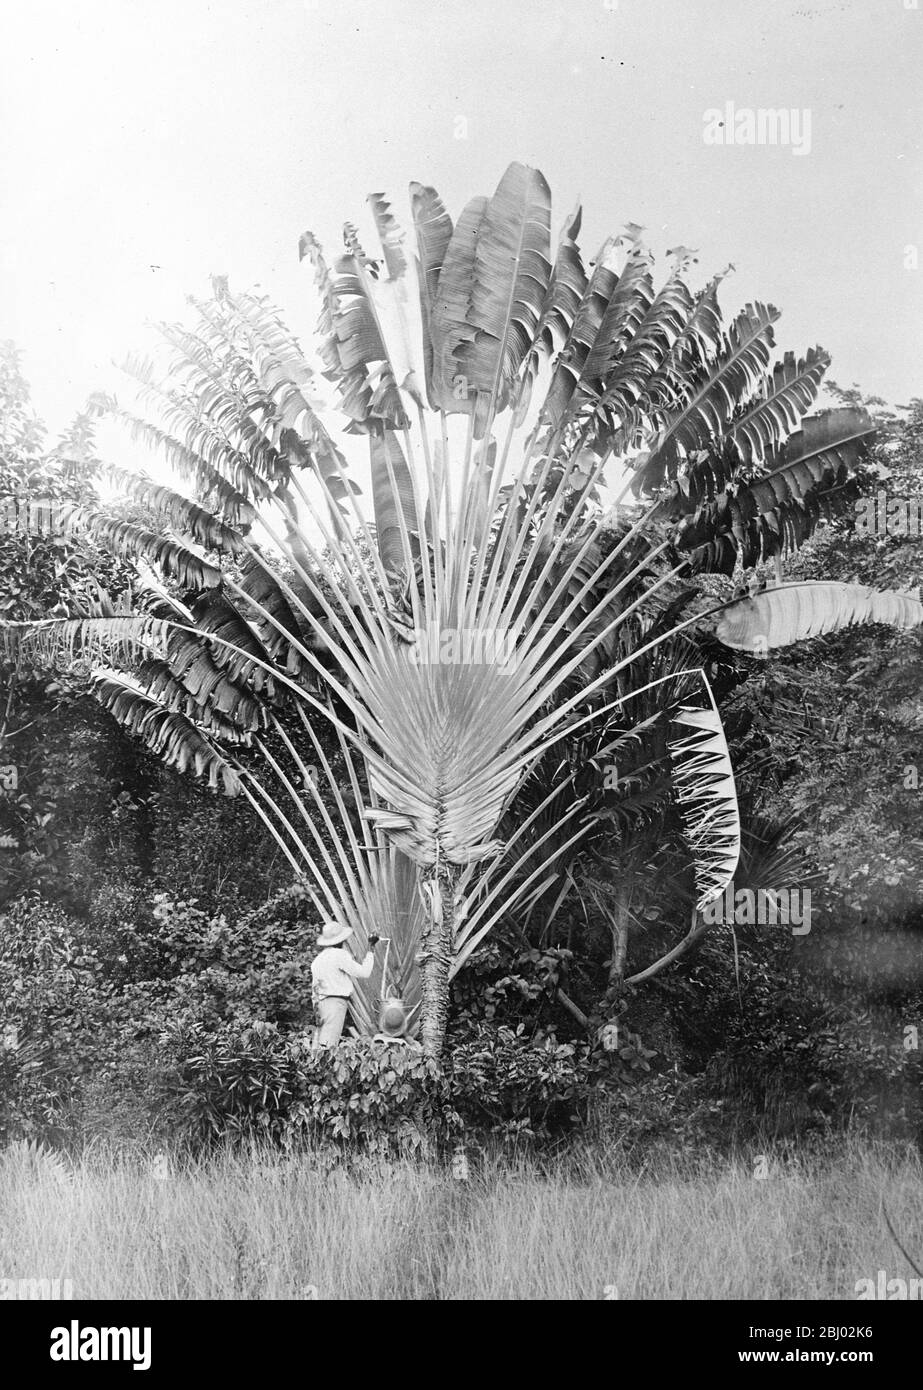 Wo die Natur kostenlose Getränke liefert. - EIN durstiger Wanderer, der auf Jamaika eine 'Traveller' s Palm' anzapft - 14. Dezember 1924 Stockfoto